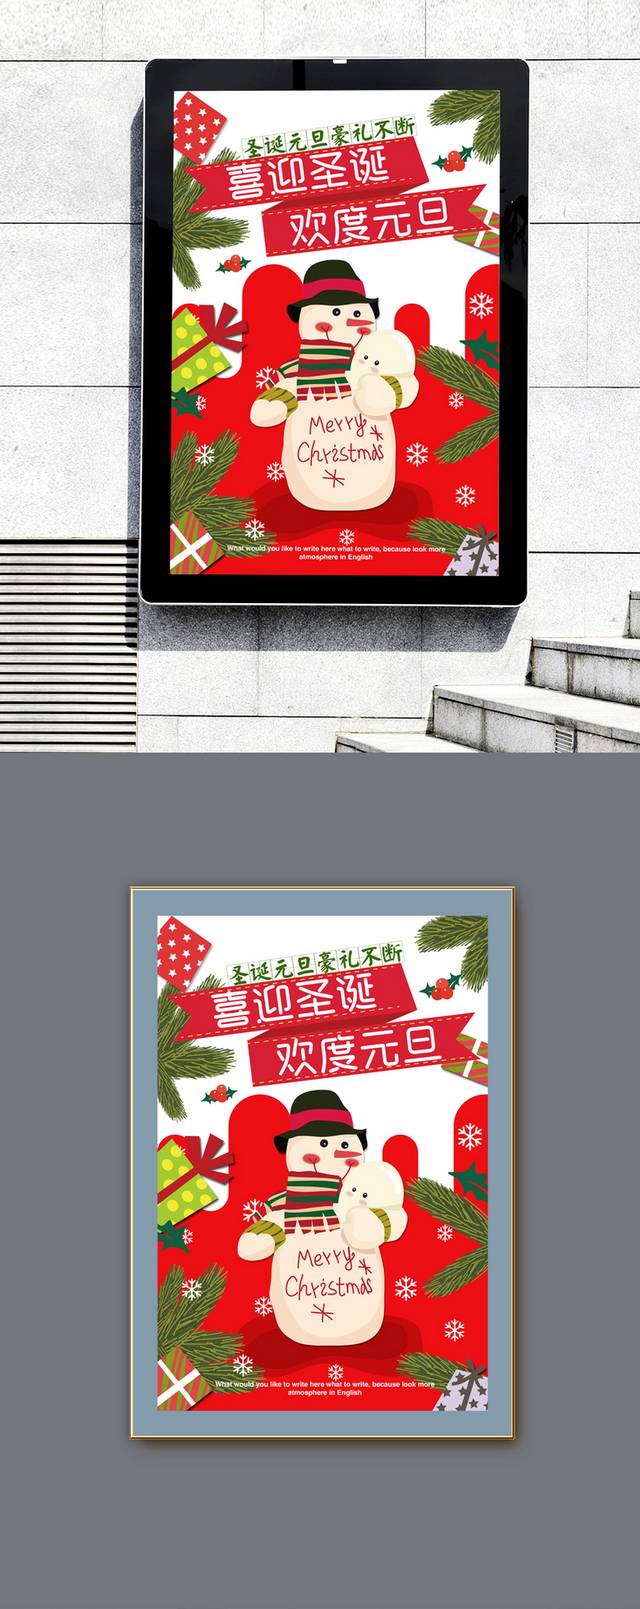 创意大气圣诞节促销海报模板